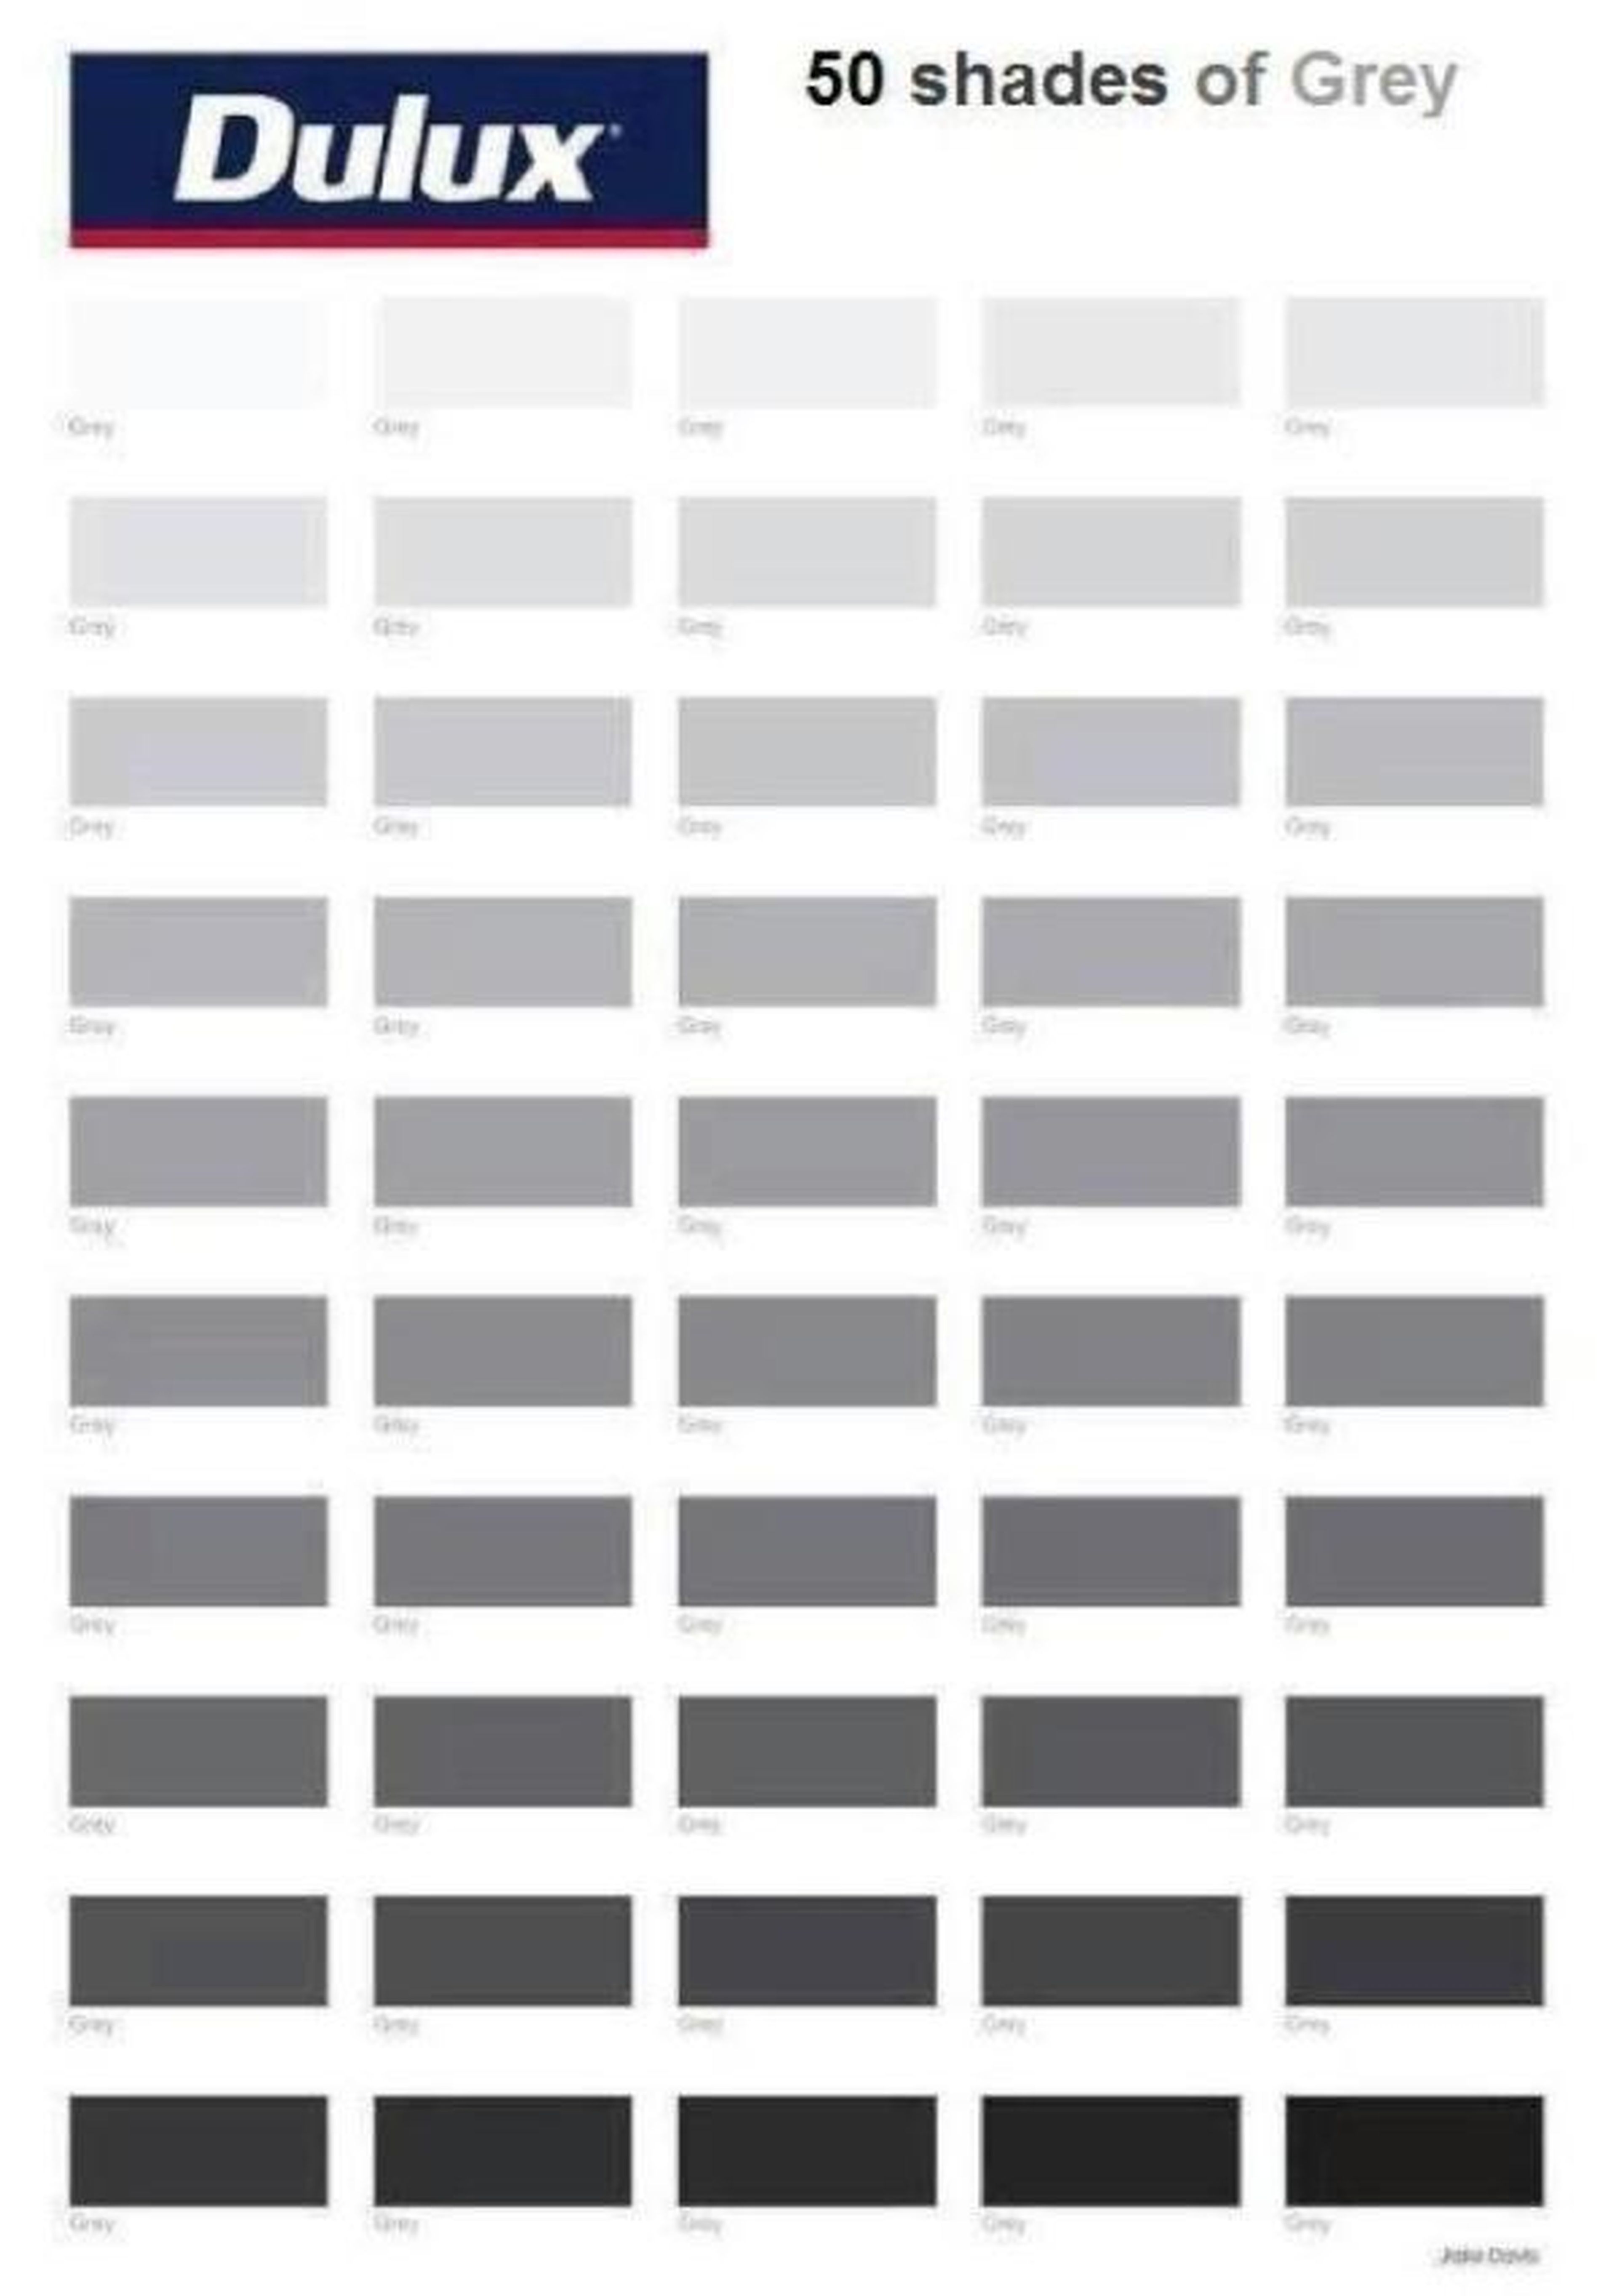 50 sombras de Grey: los mejores memes frikis